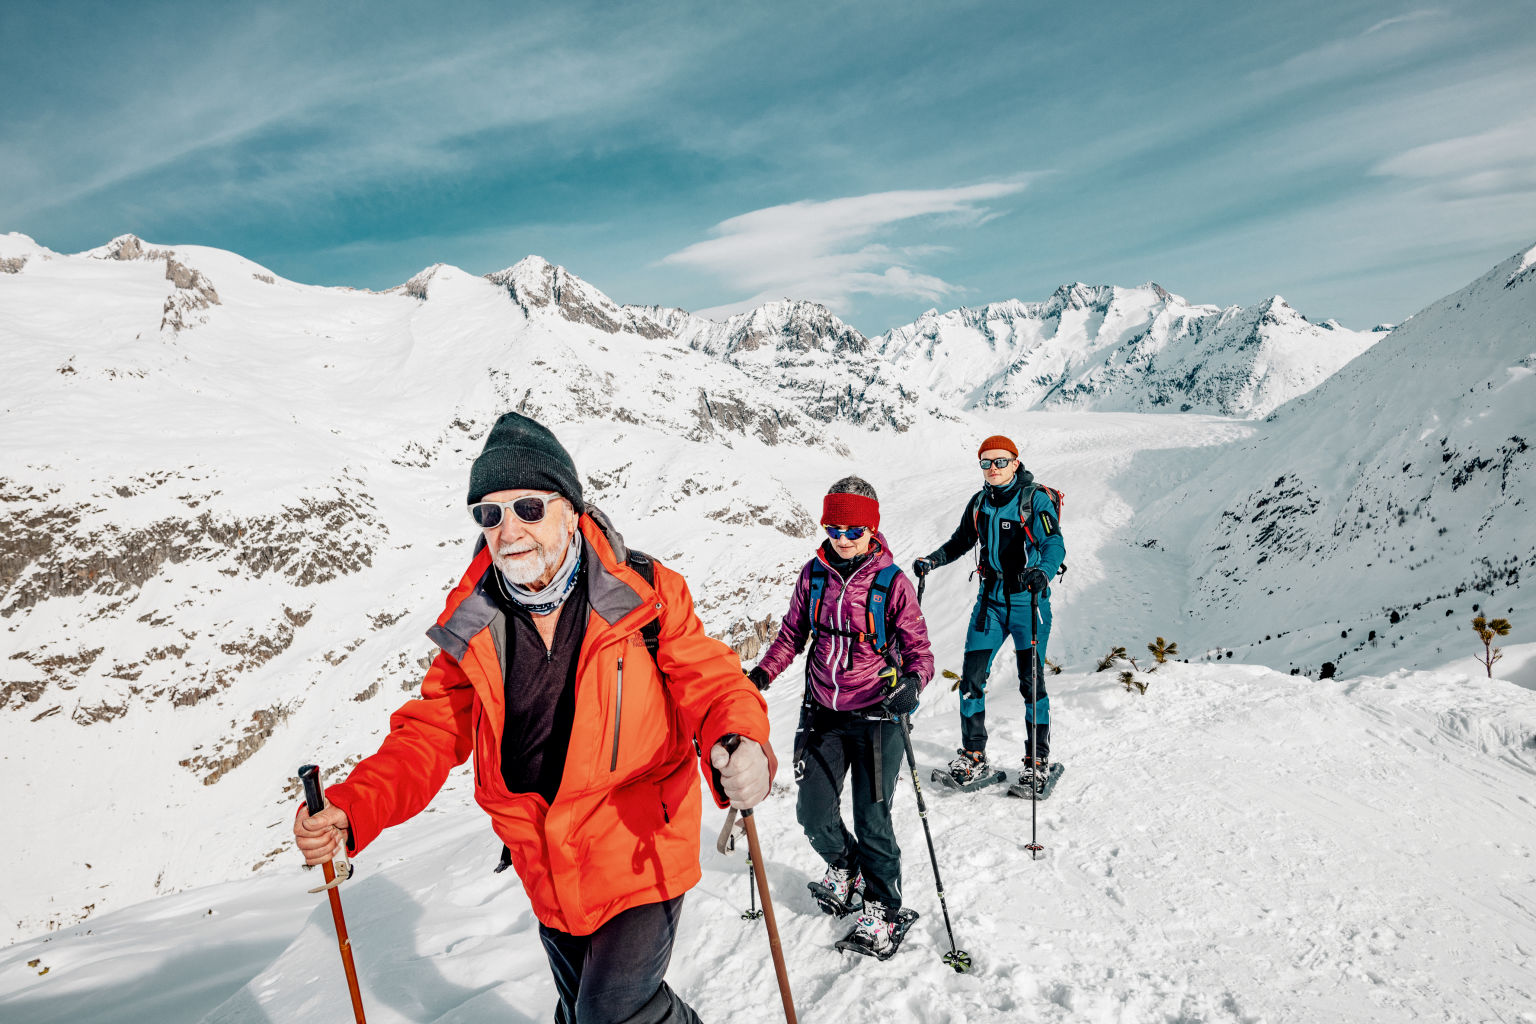 Berge, Gletscher, Schnee – und viel frische Luft: Schneeschuhtour in der Aletsch Arena, Wallis Schweiz